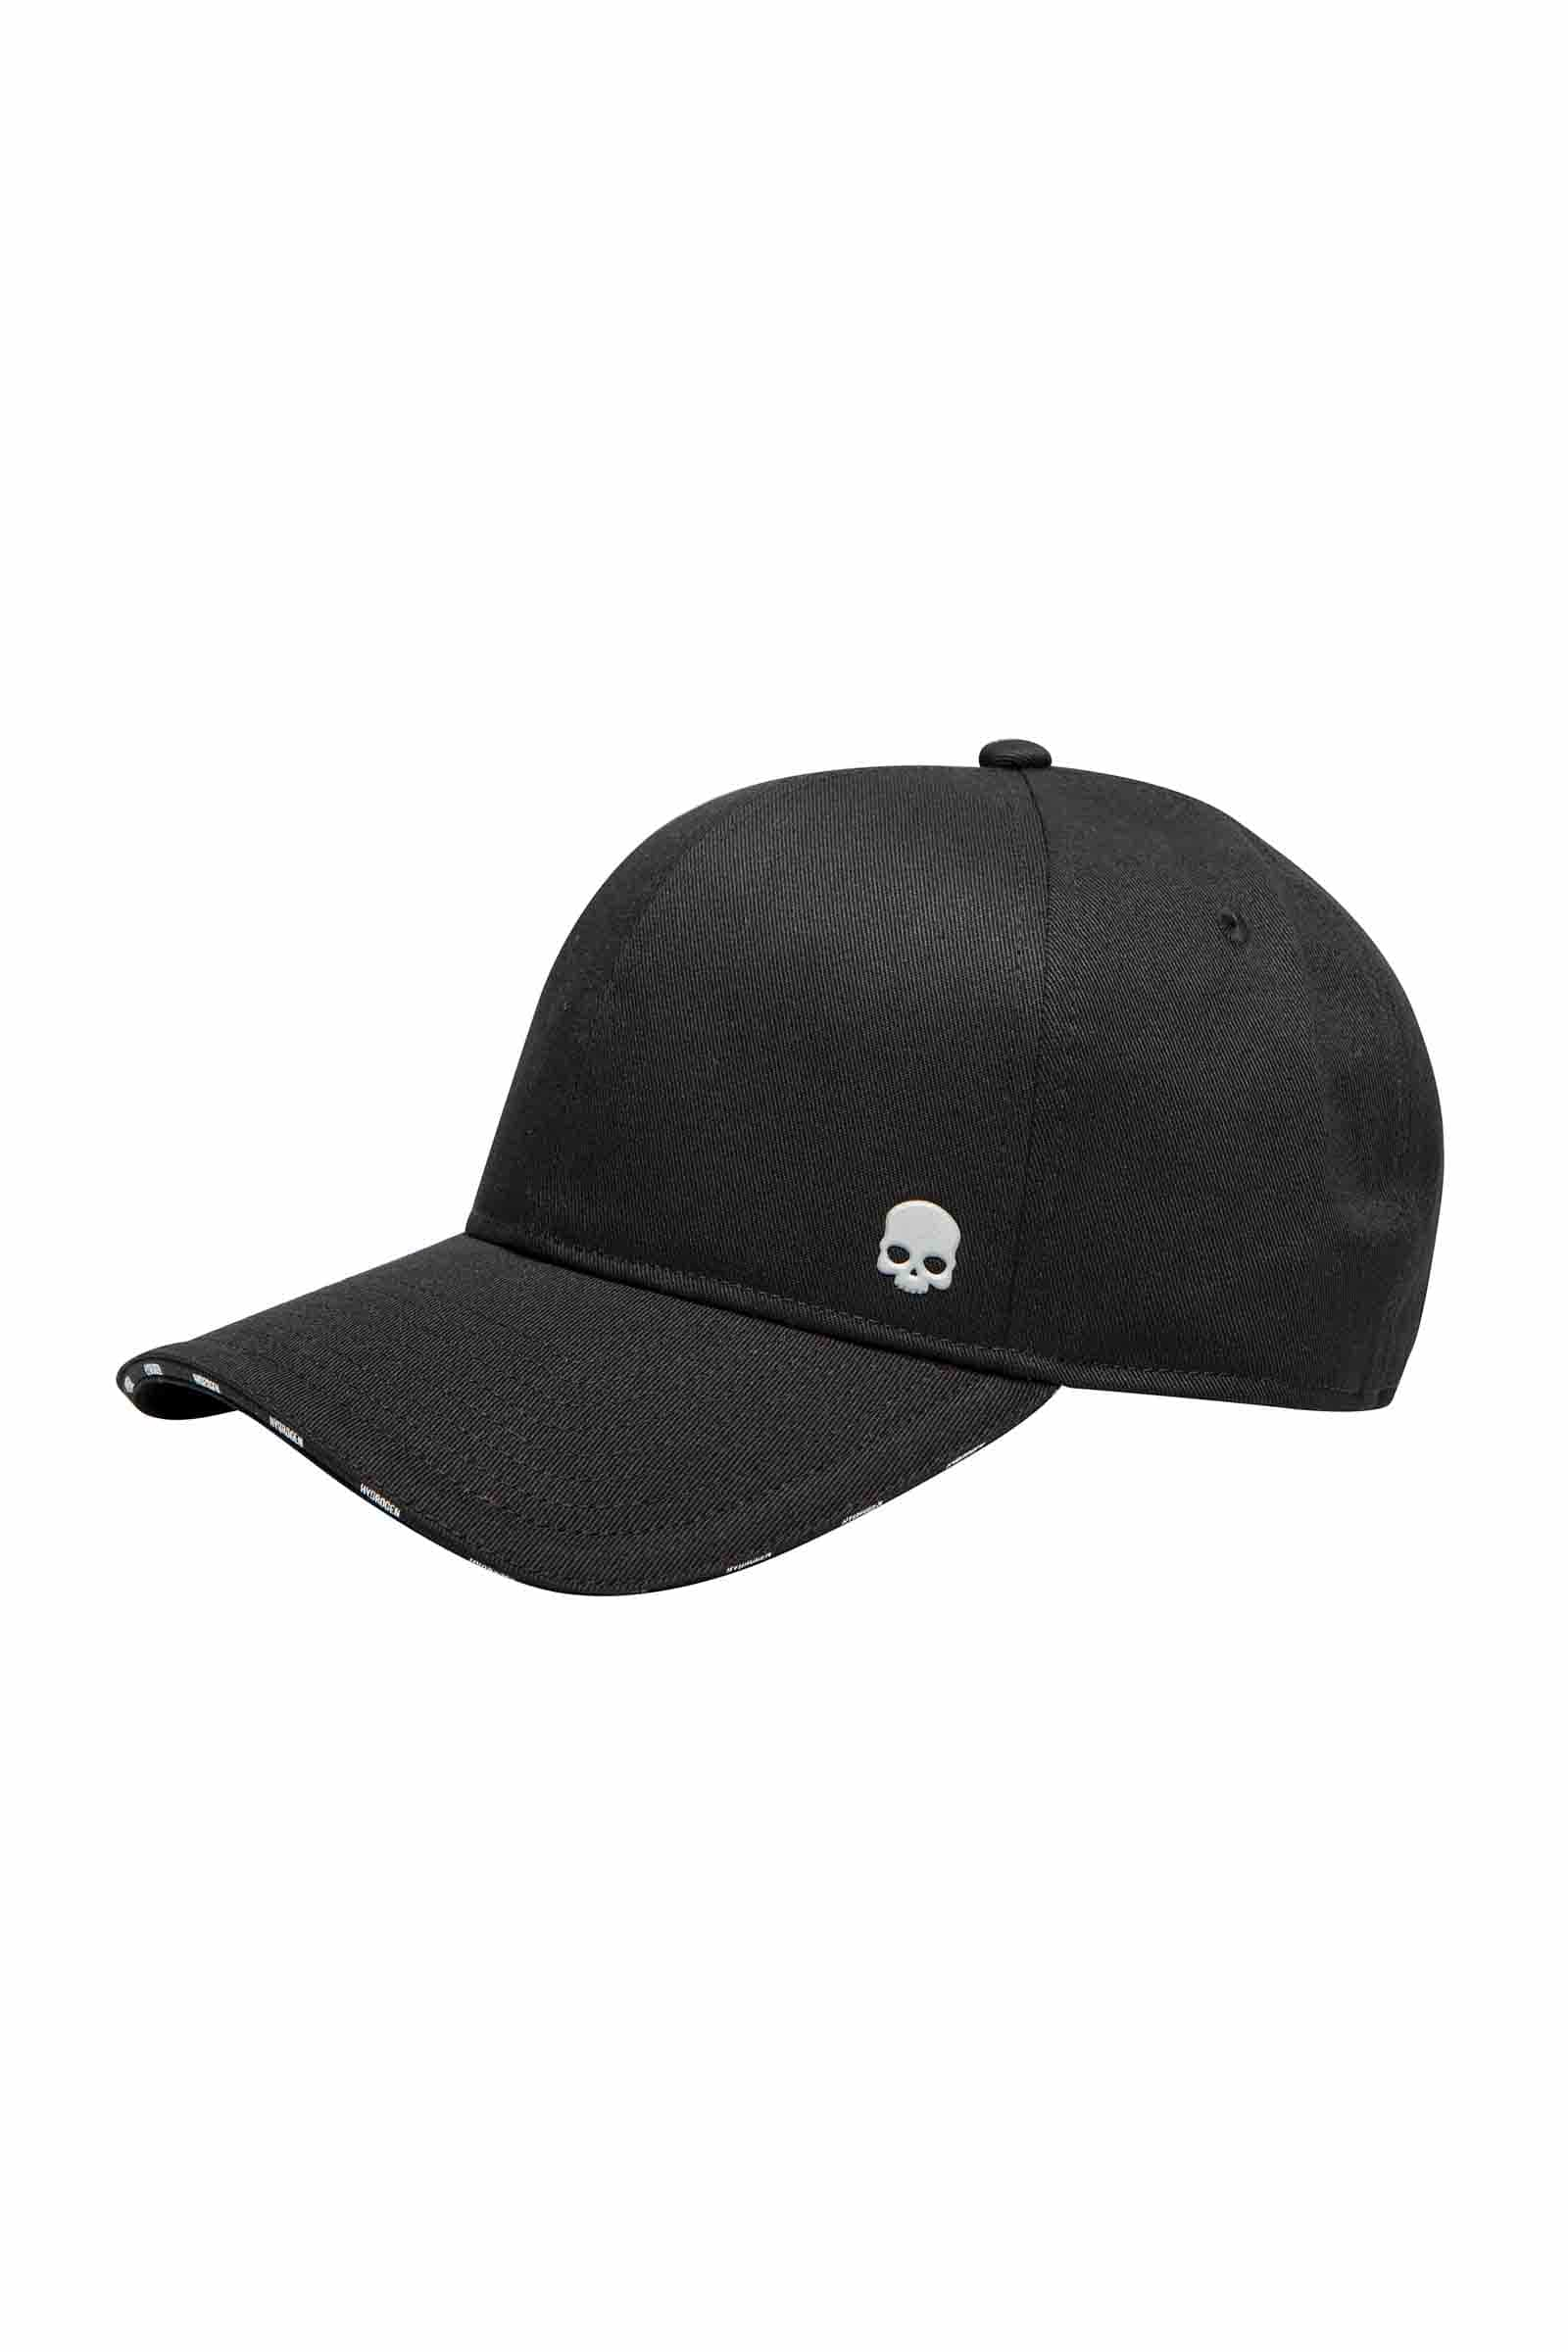 SKULL CAP - BLACK - Hydrogen - Luxury Sportwear